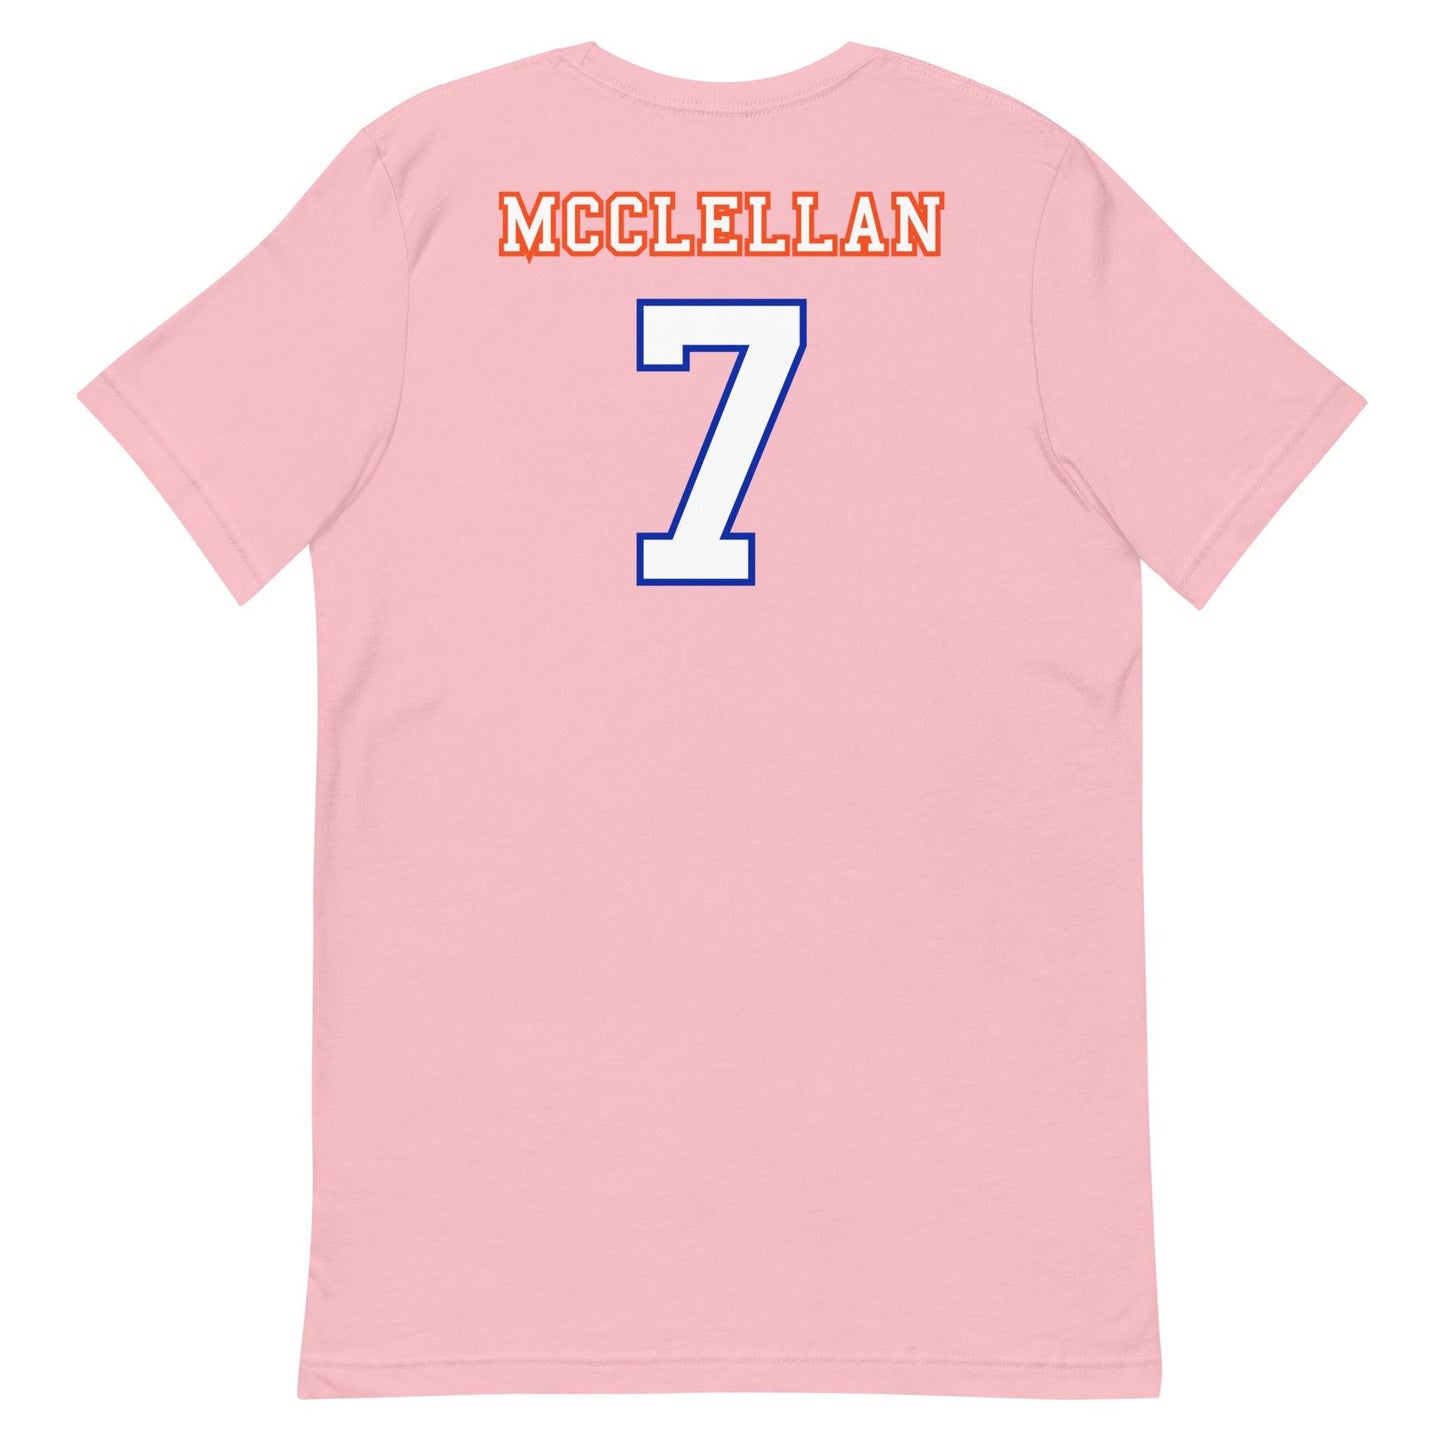 Chris McClellan "Jersey" t-shirt - Fan Arch